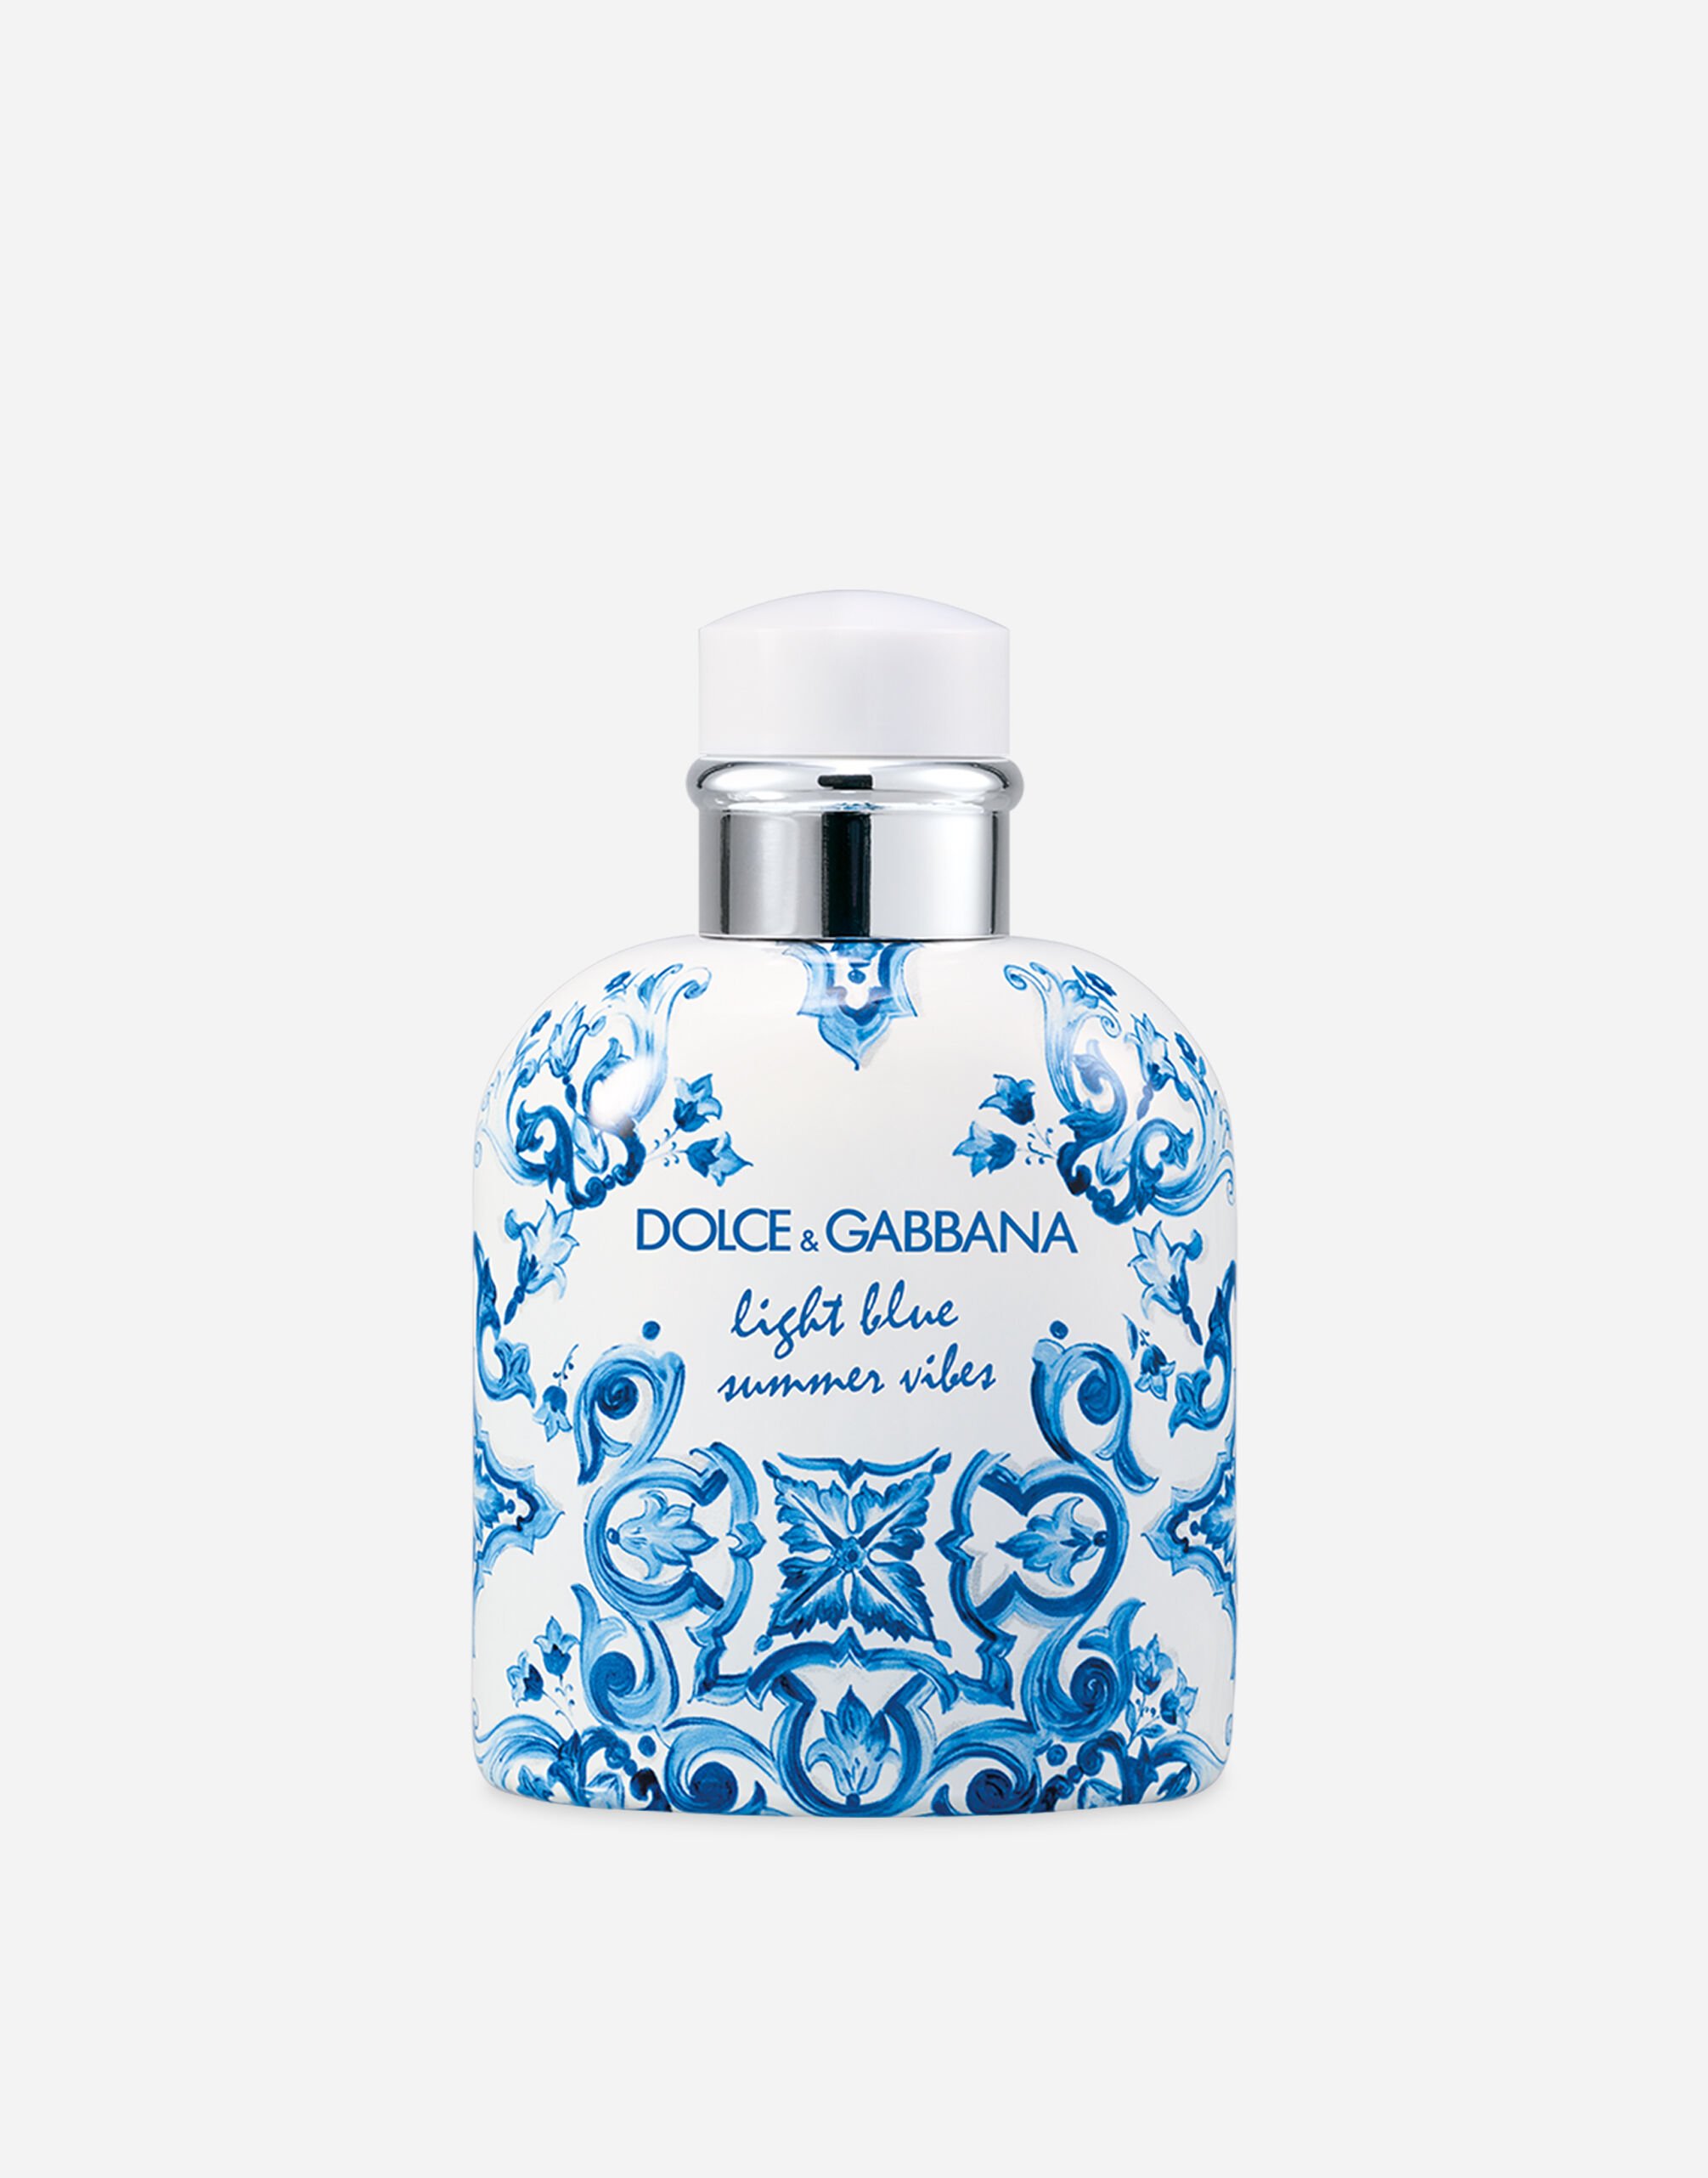 Dolce & Gabbana Light Blue Summer Vibes Pour Homme Eau de Toilette - VT001KVT000